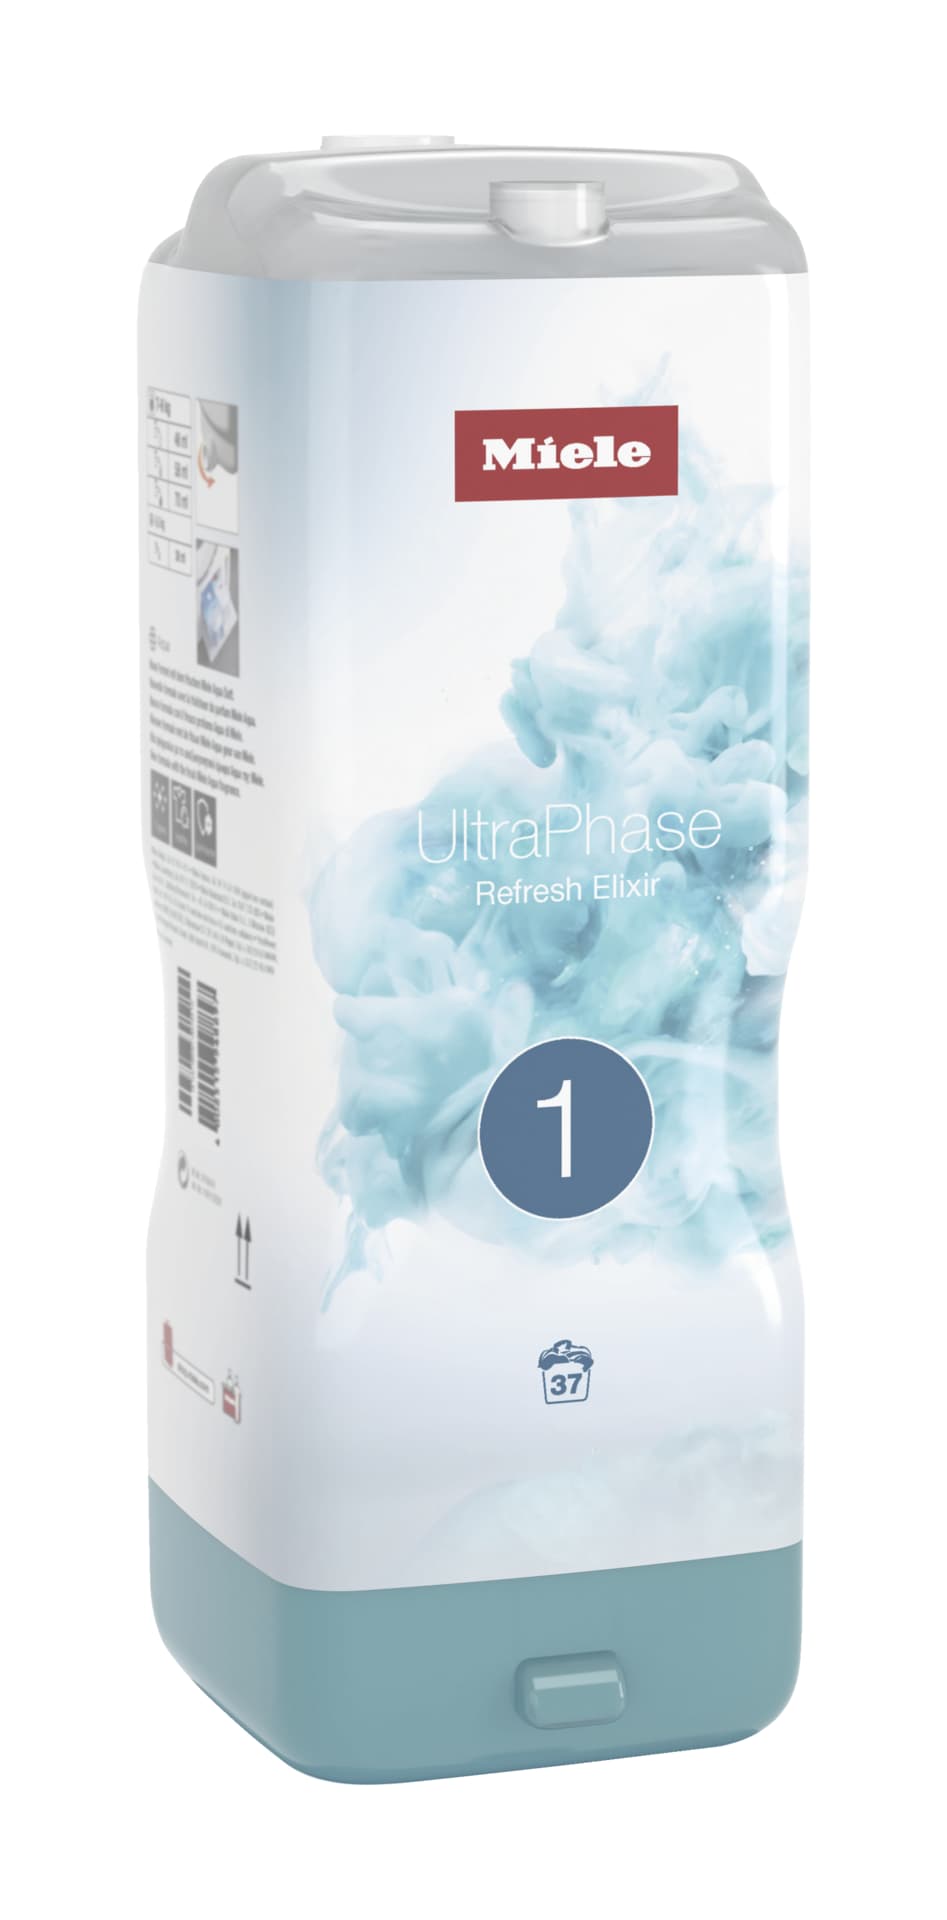 Miele Waschmittel WA UP1 RE 1402 L Miele UltraPhase 1 Refresh Elixir Limited Edition gegen schlechte Gerüche und 